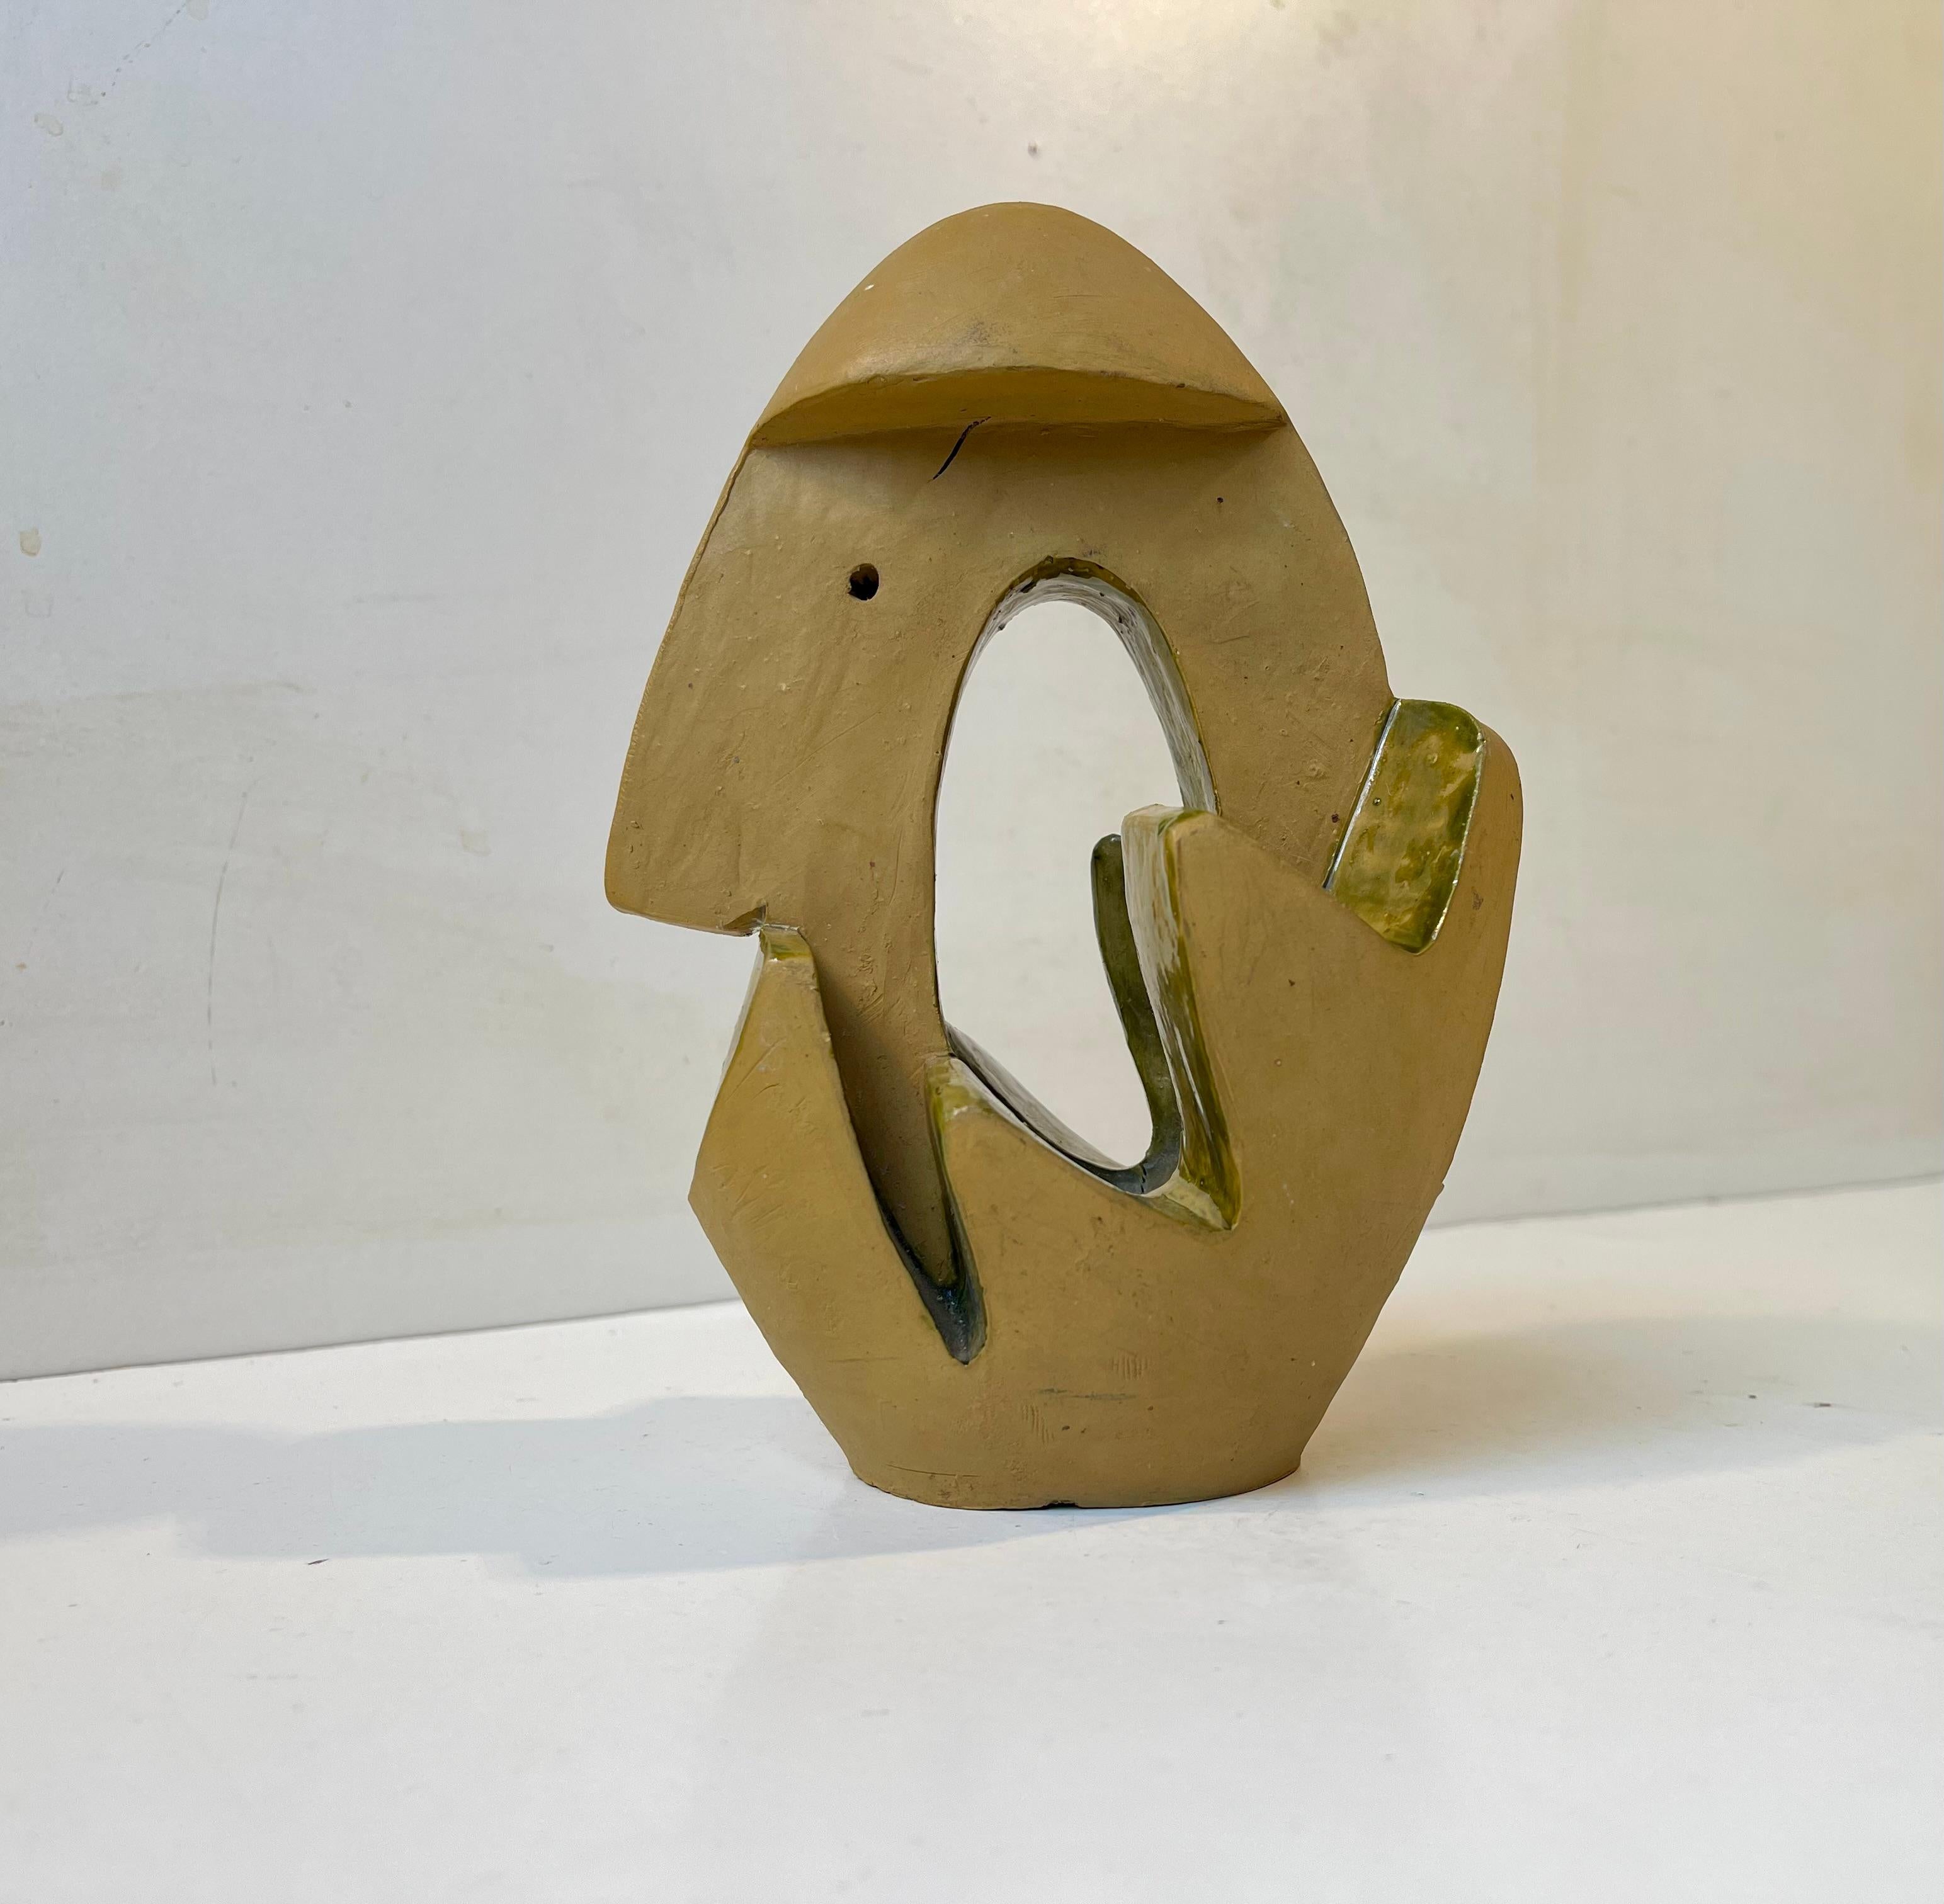 Eine skulpturale surrealistische Figur/Ornament aus teilweise glasierter und handbemalter Keramik aus den 1960er Jahren. Eine abstrakte Form A, die auf einer eiförmigen Grundform basiert. Die Hauptfarbe ist Senf und die aufgetragene Glasur